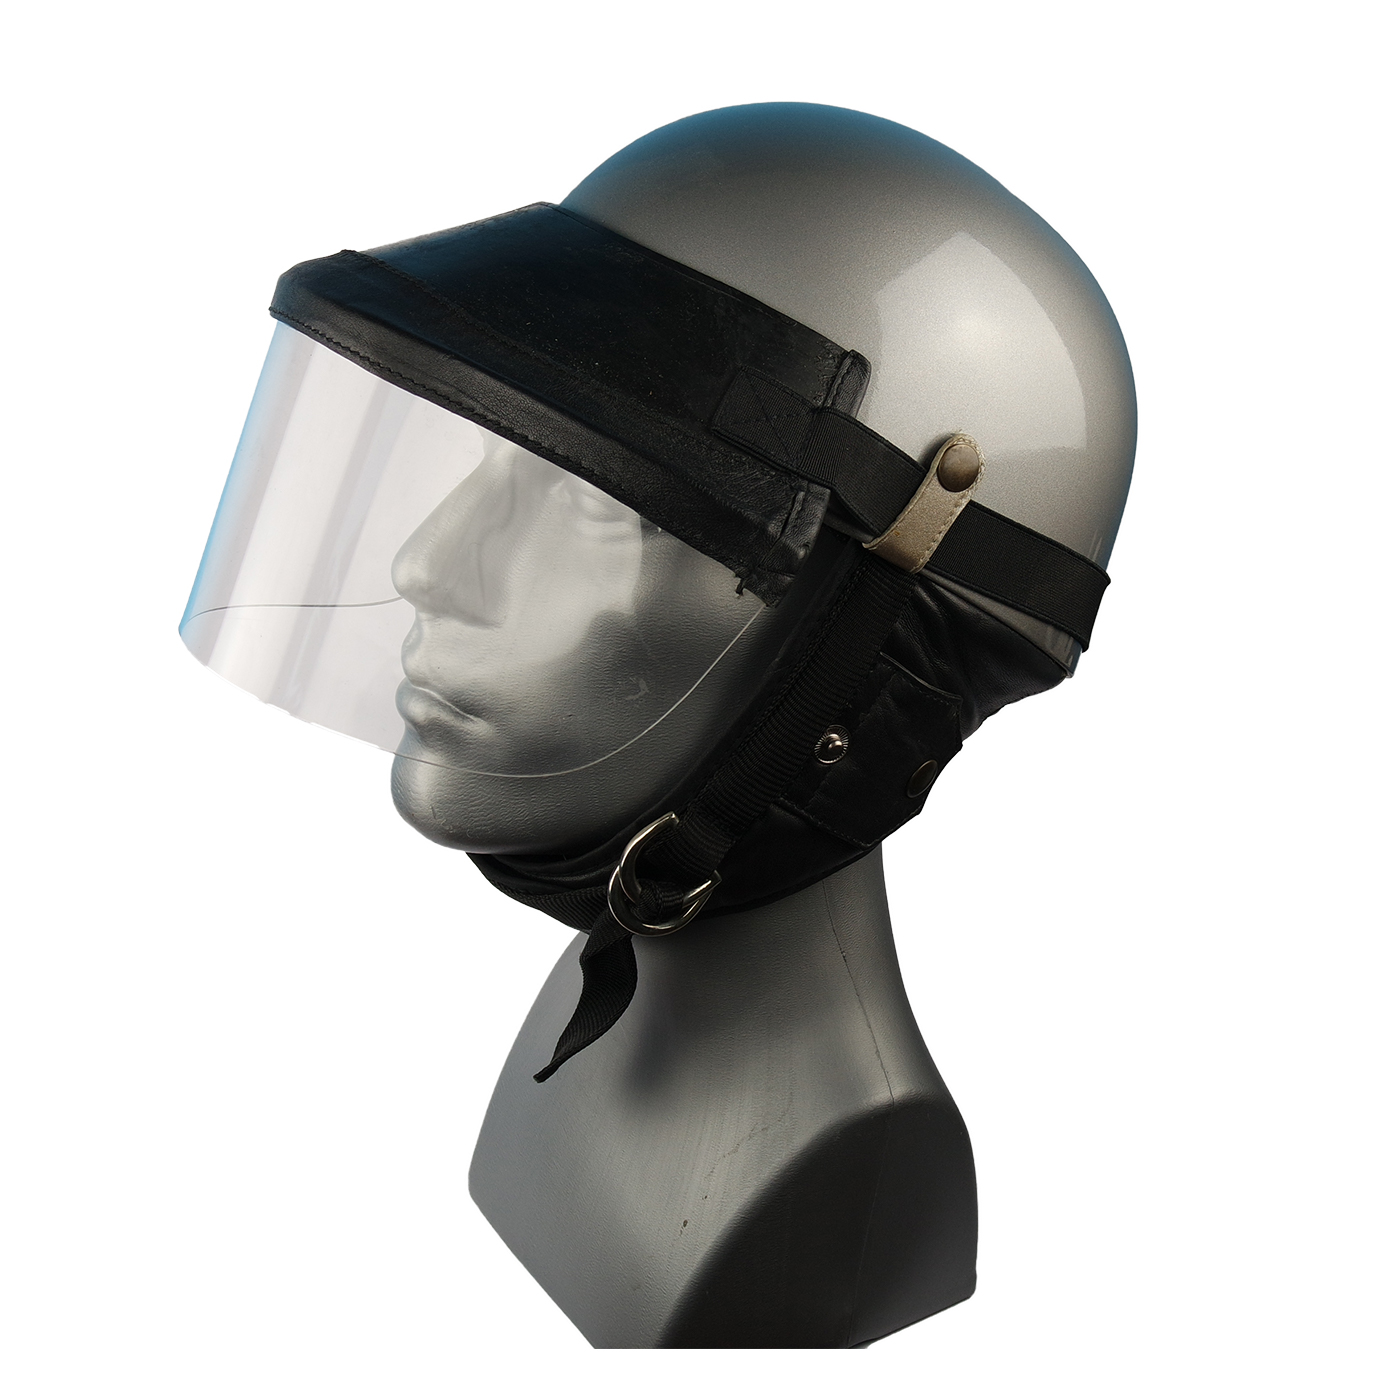 Steck-Visier für Classic Helme aus echtem Leder in schwarz